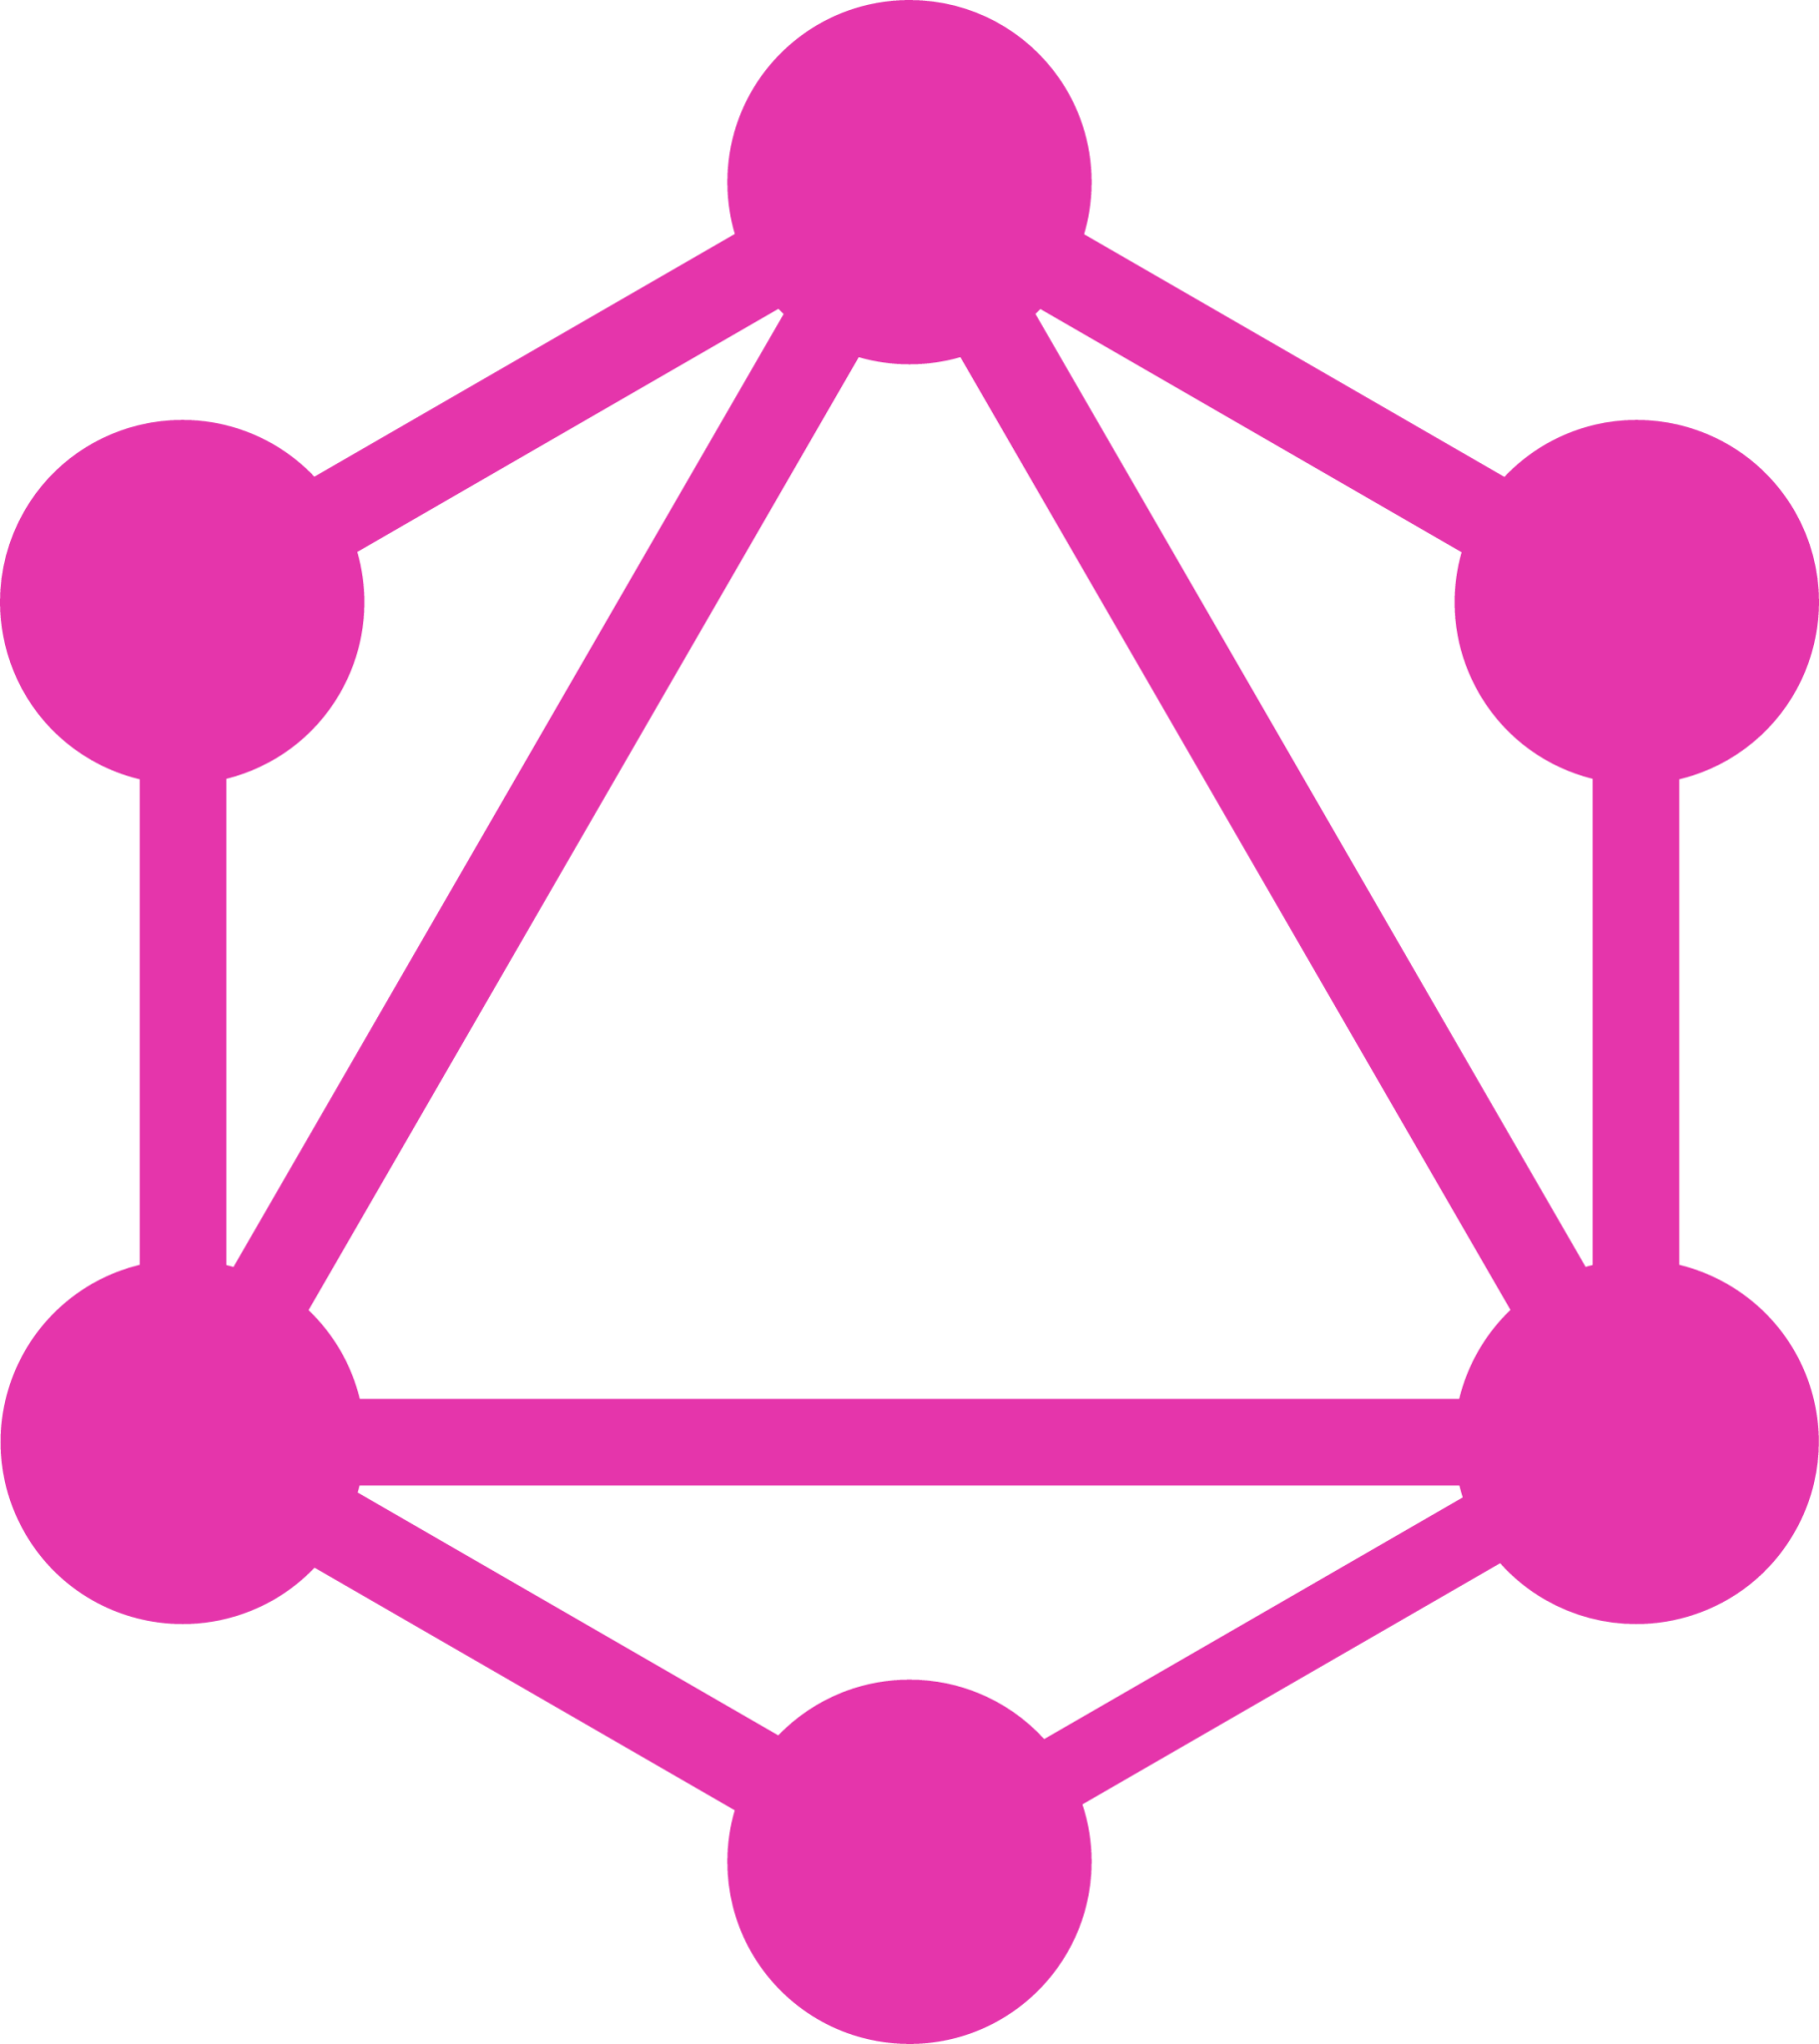 GraphQL icon